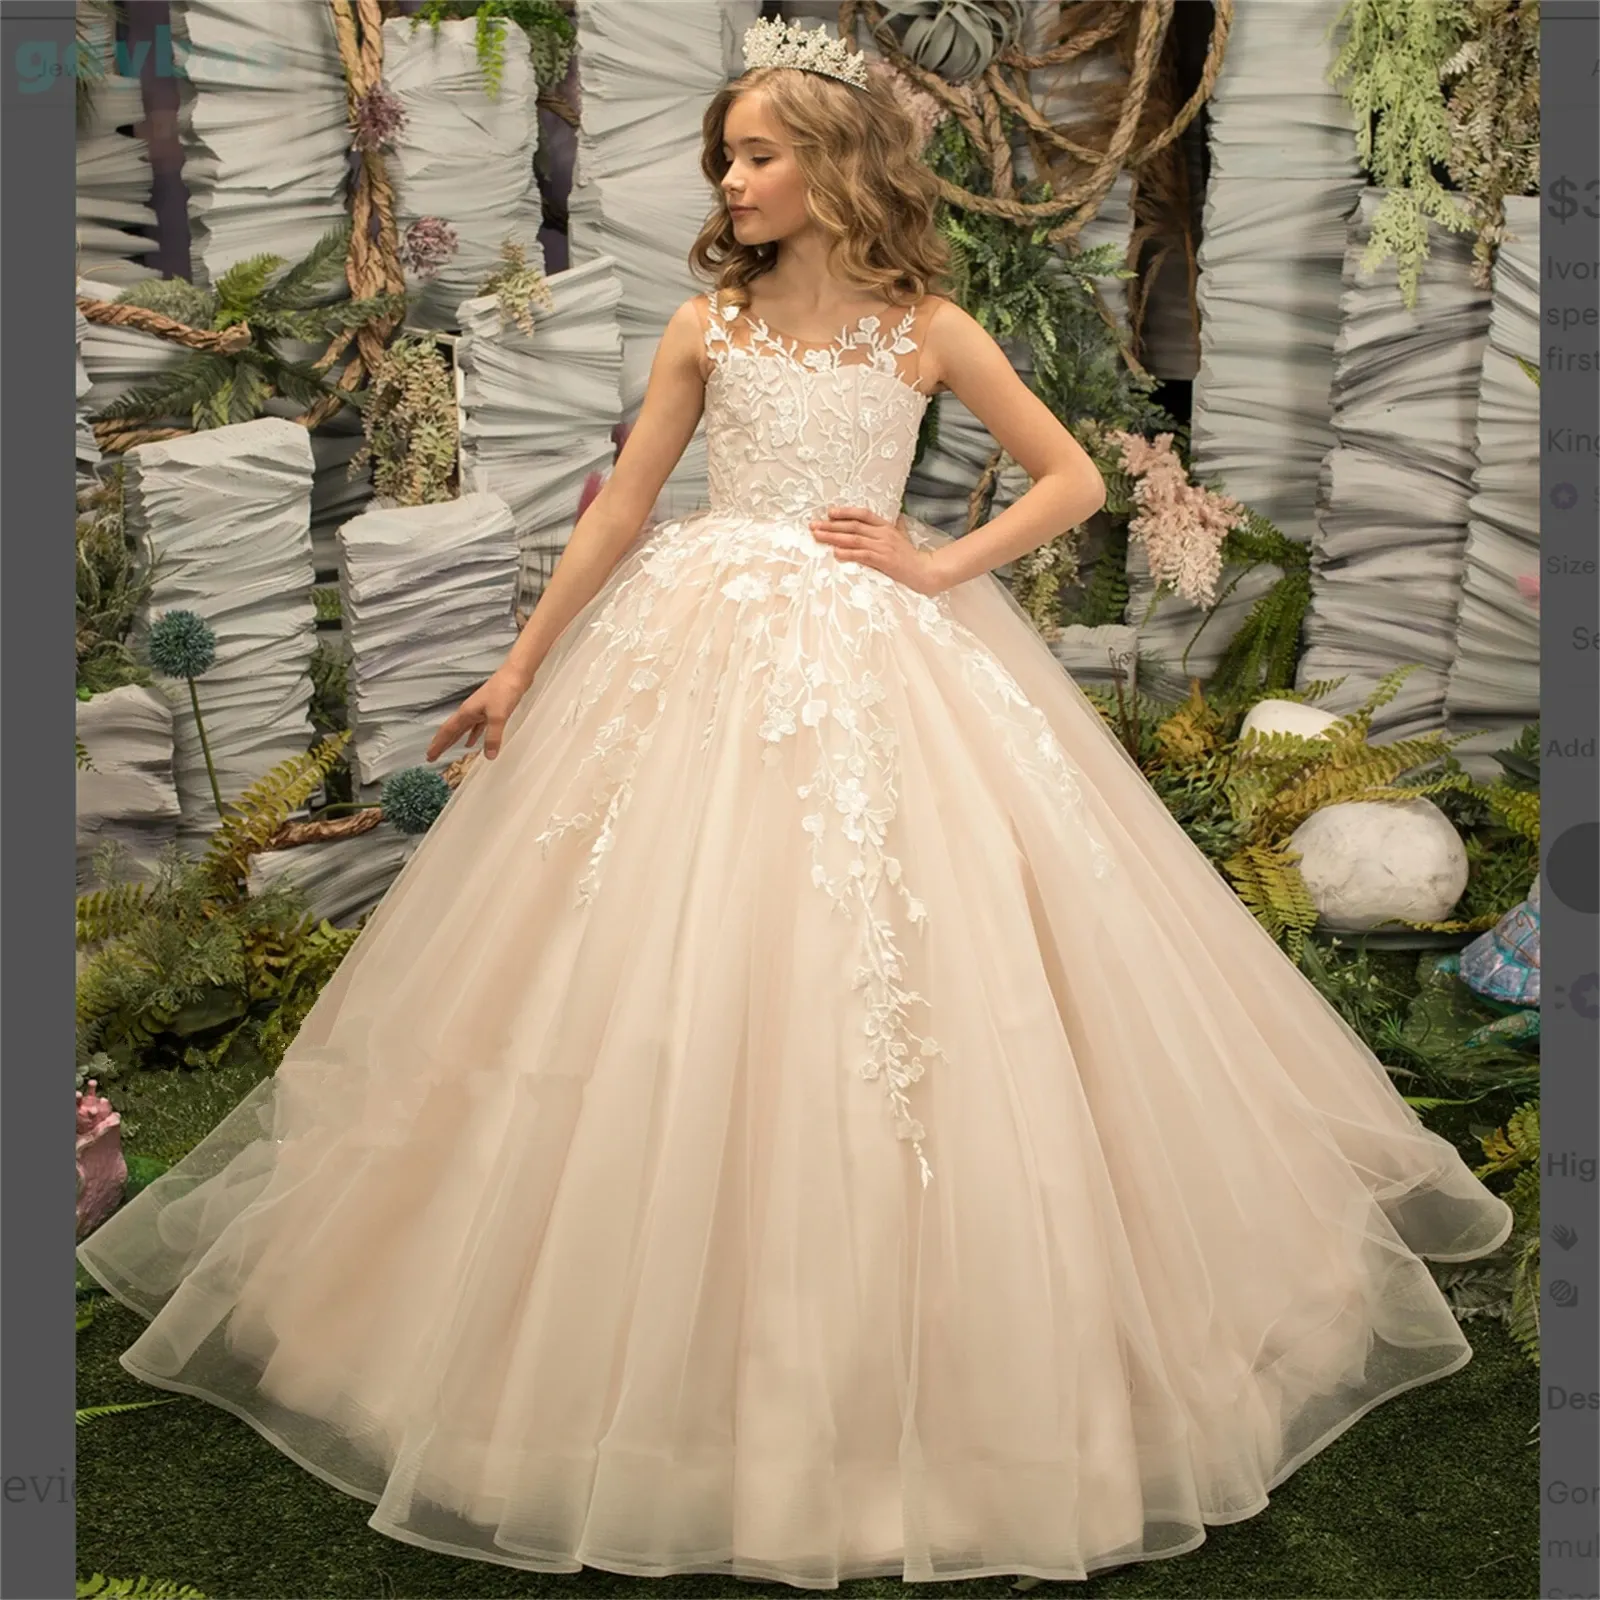 Klassische lange Blumenmädchenkleider mit Juwel-Ausschnitt, ärmellosem Tüll und Spitzenapplikationen, Ballkleid, bodenlang, maßgeschneidert für die Hochzeitsfeier